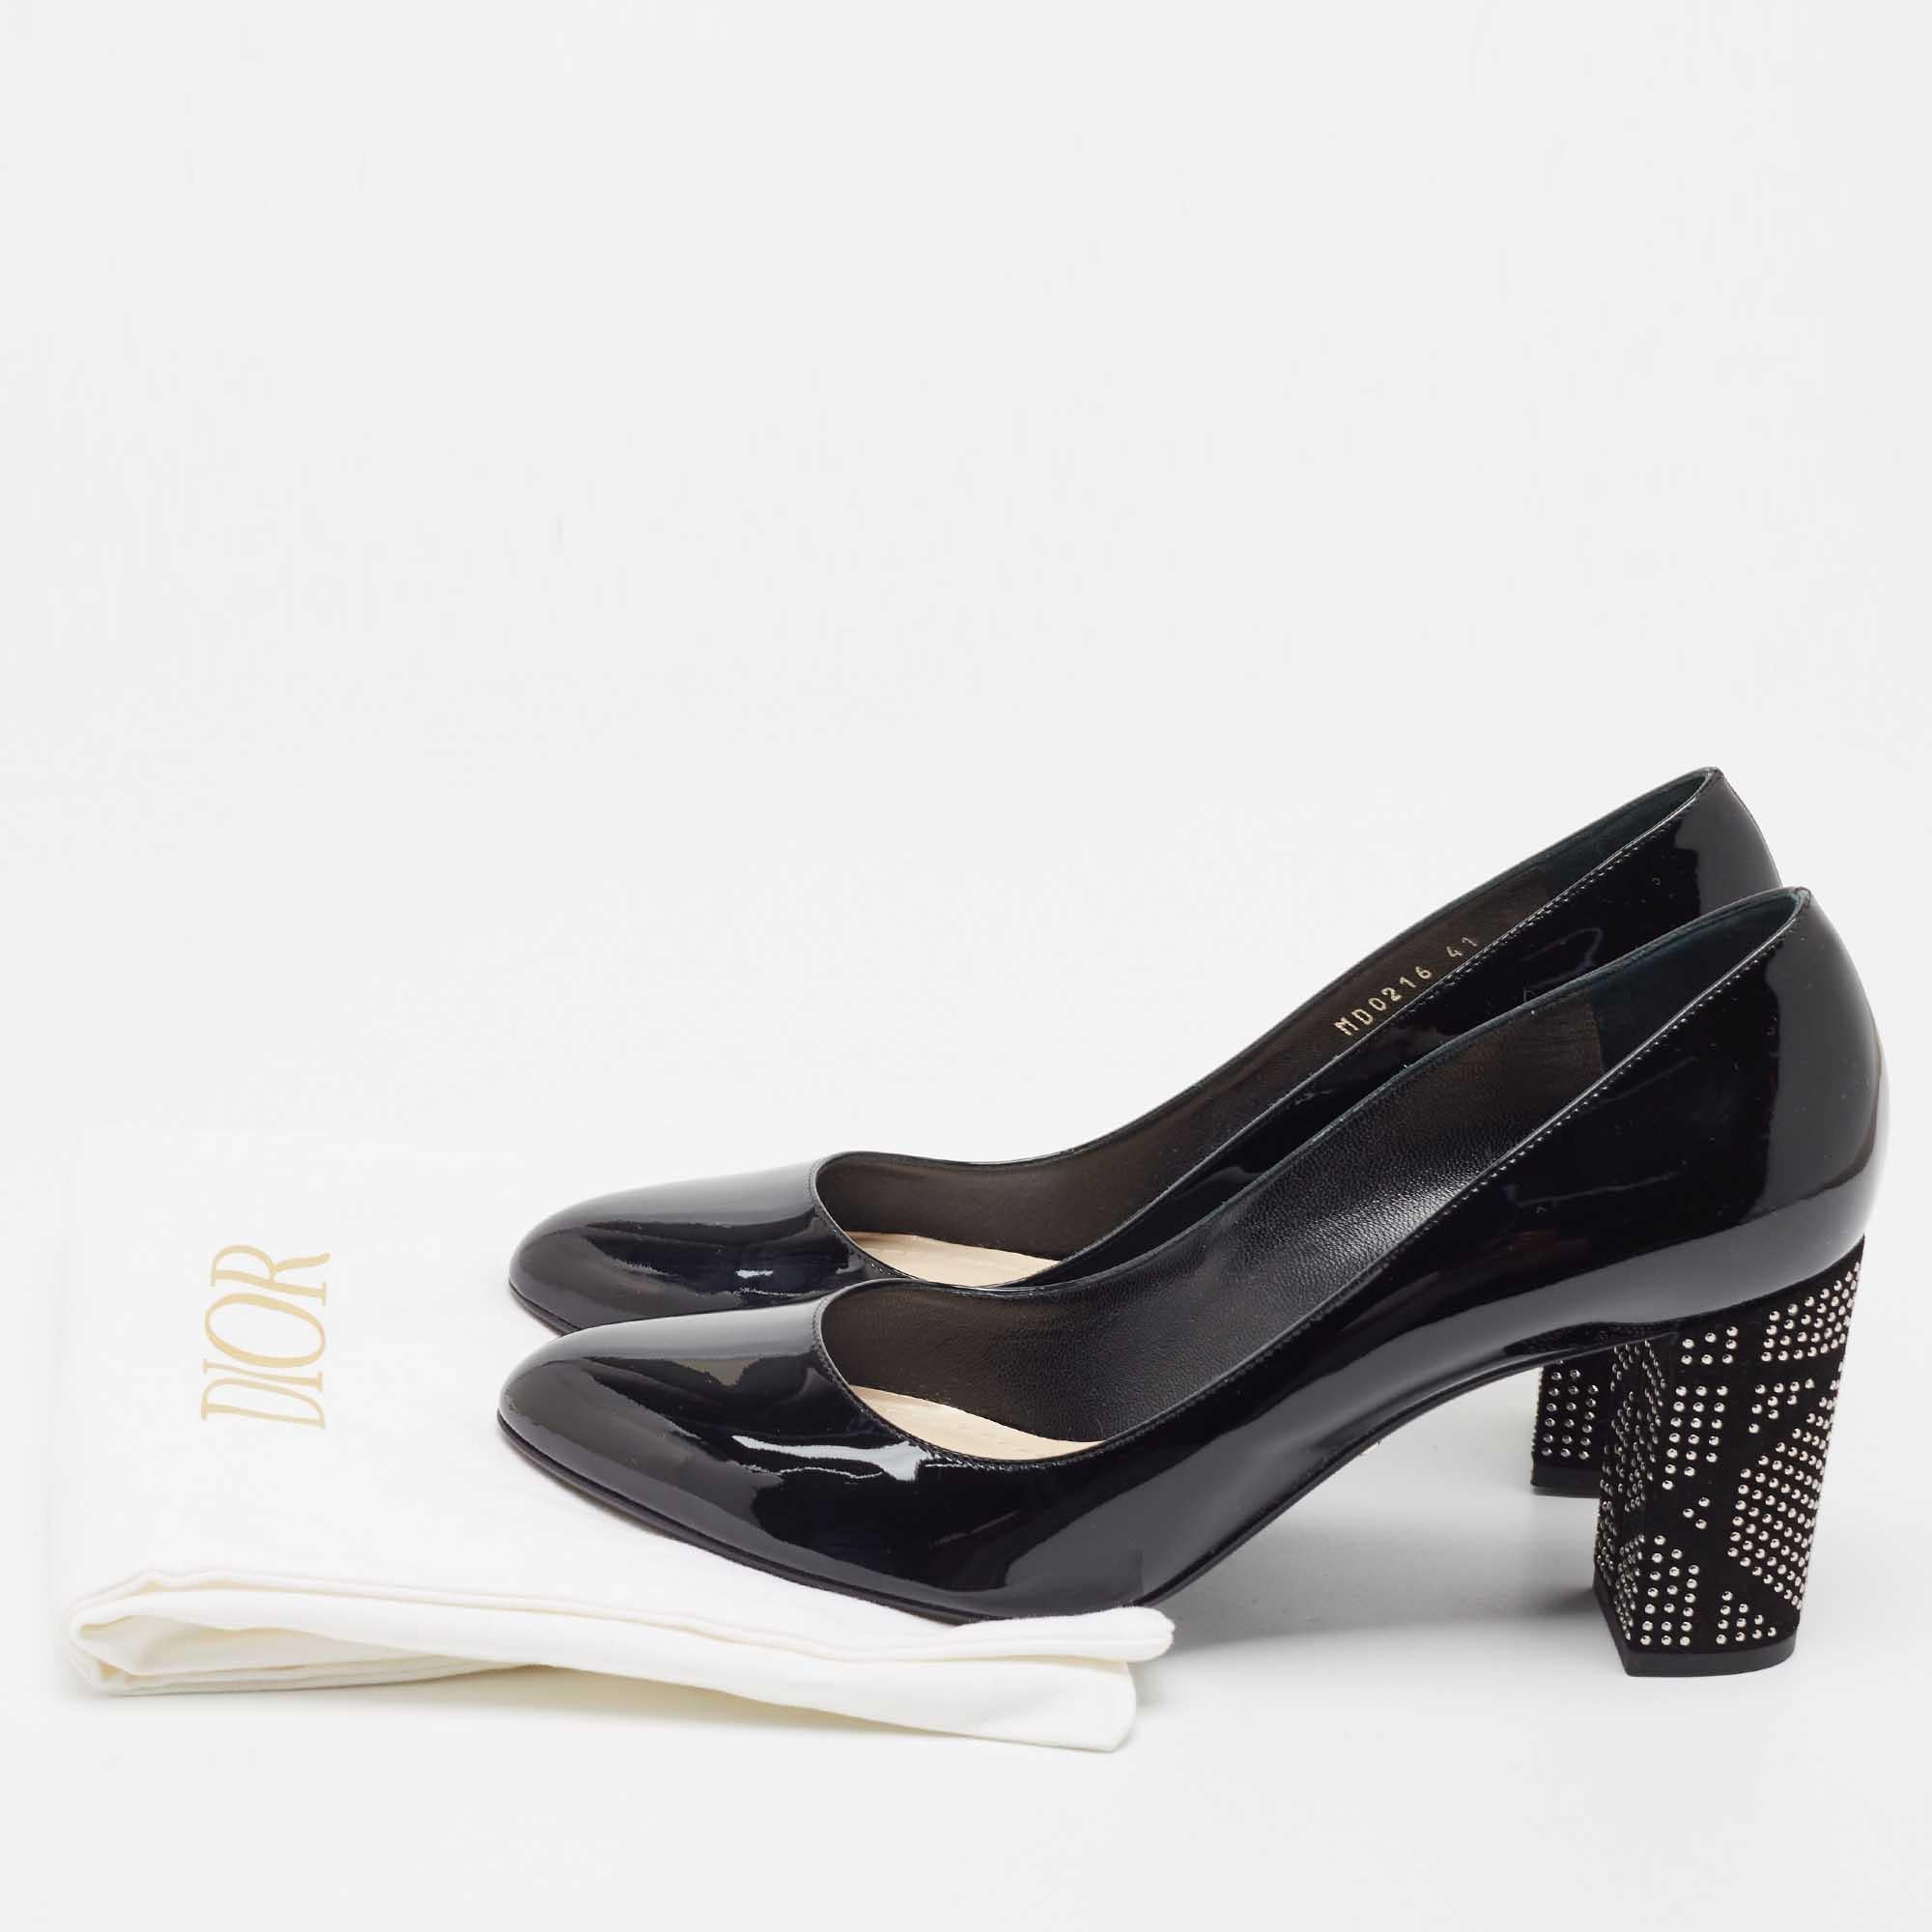 Dior Black Patent Leather Embellished Block Heel Pumps Size 41 5